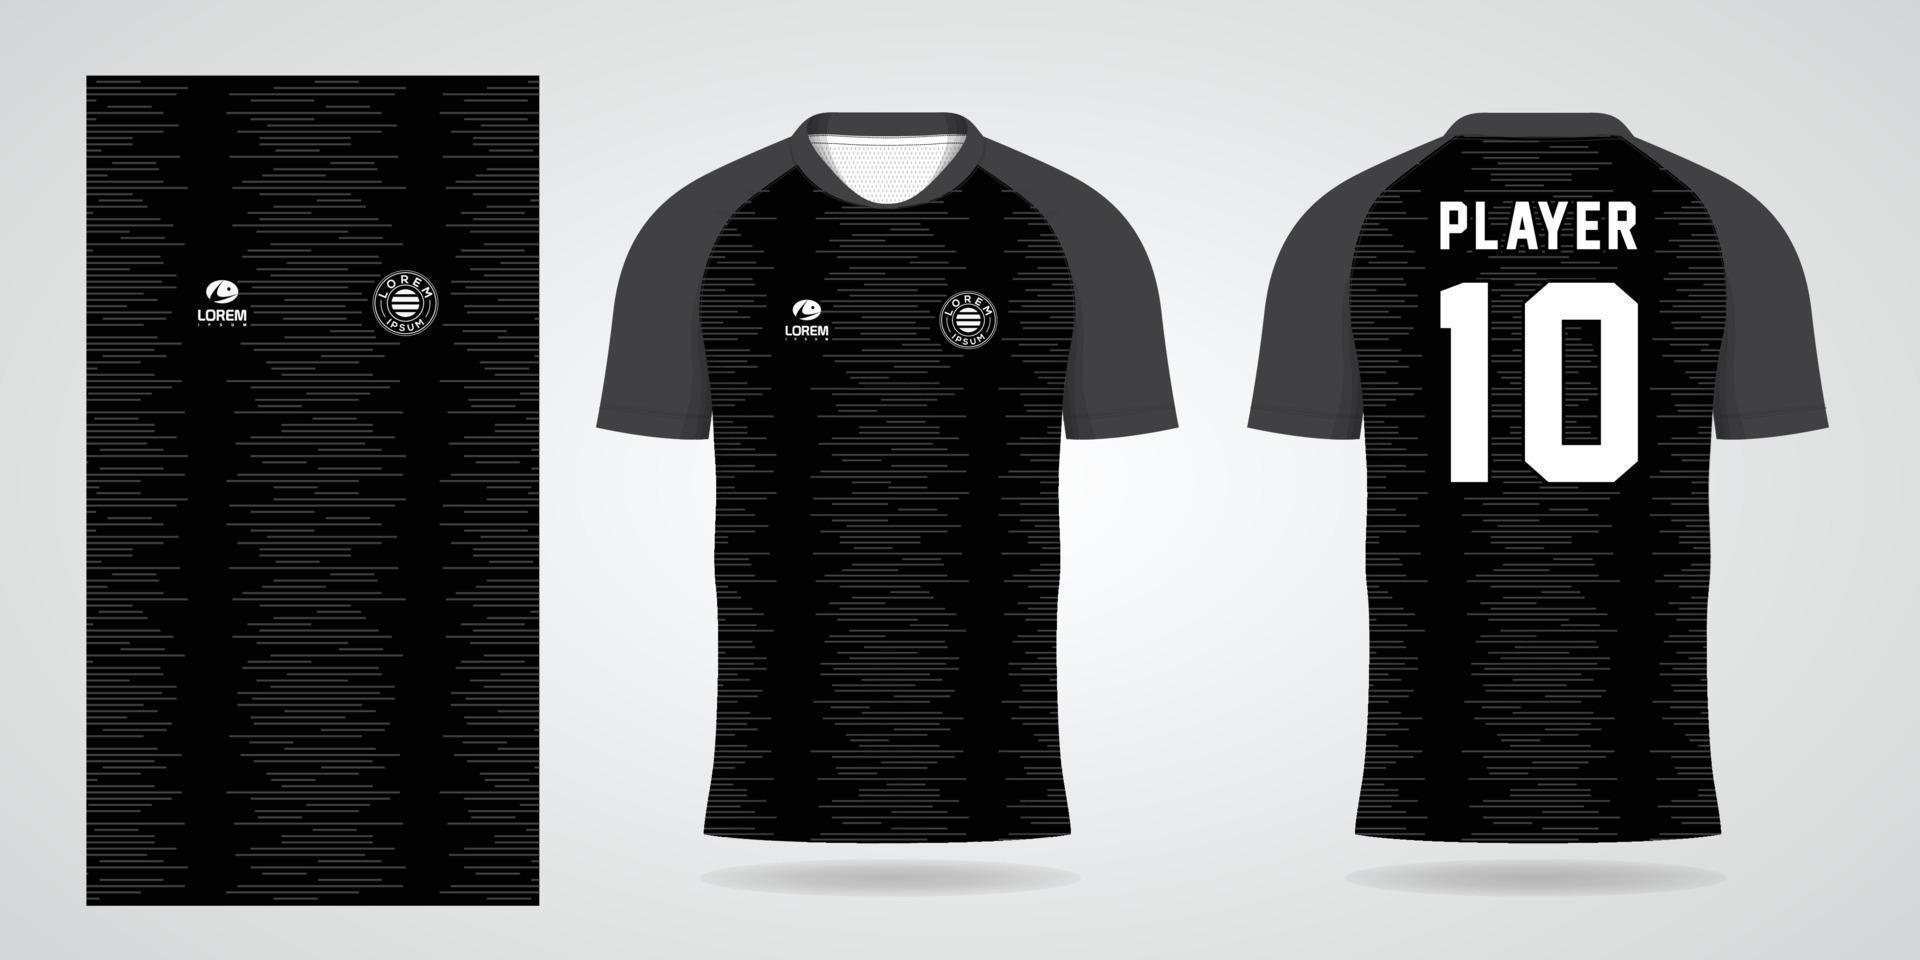 plantilla de diseño de deporte de camiseta de fútbol negro vector